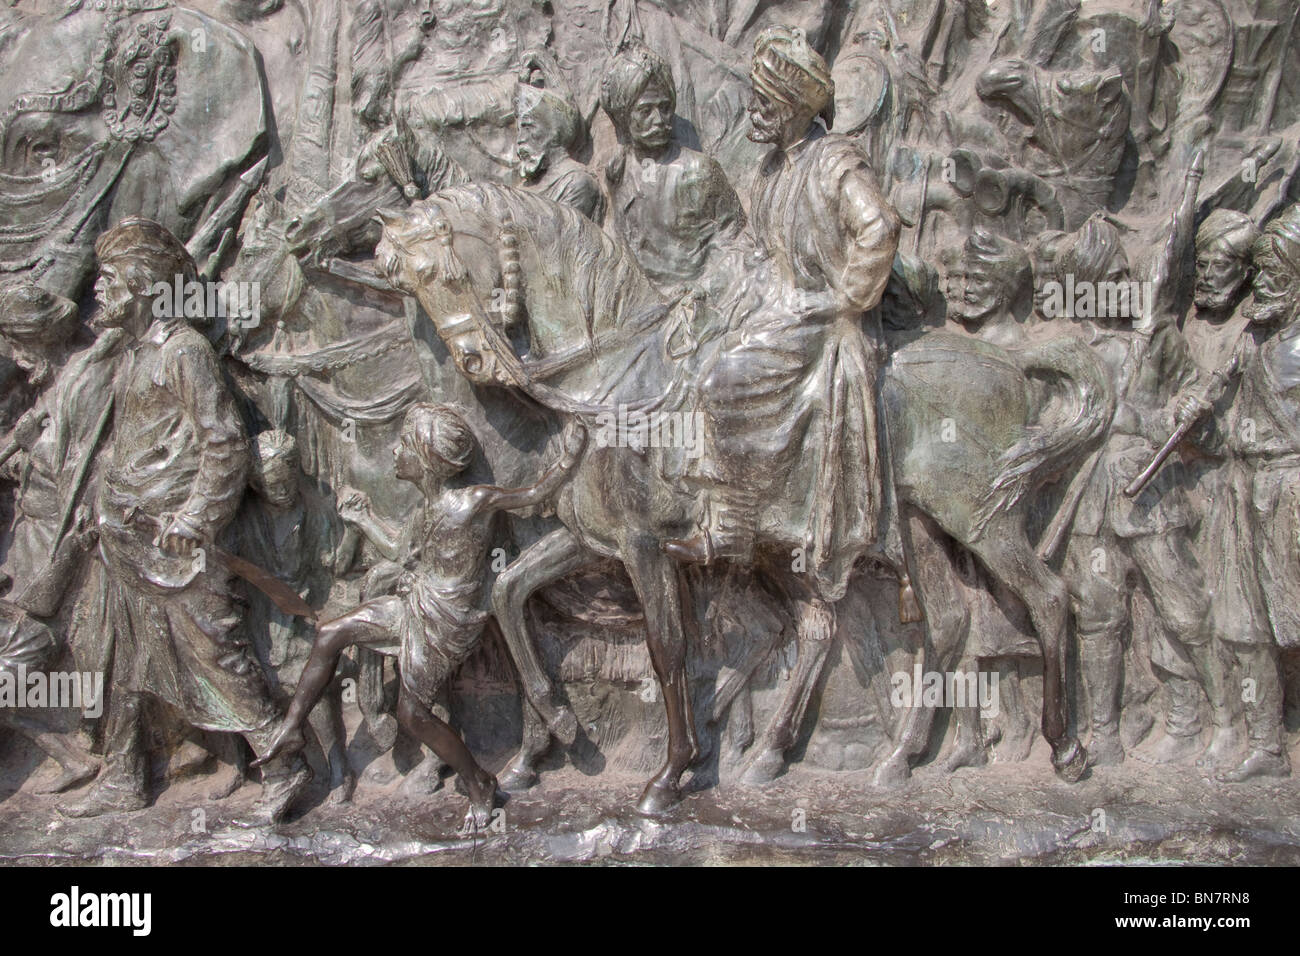 Dettaglio del pannello in bronzo eseguito da Sir John Goscombe R.A., al Victoria Memorial - Kolkata (Calcutta), West Bengal, India. Foto Stock